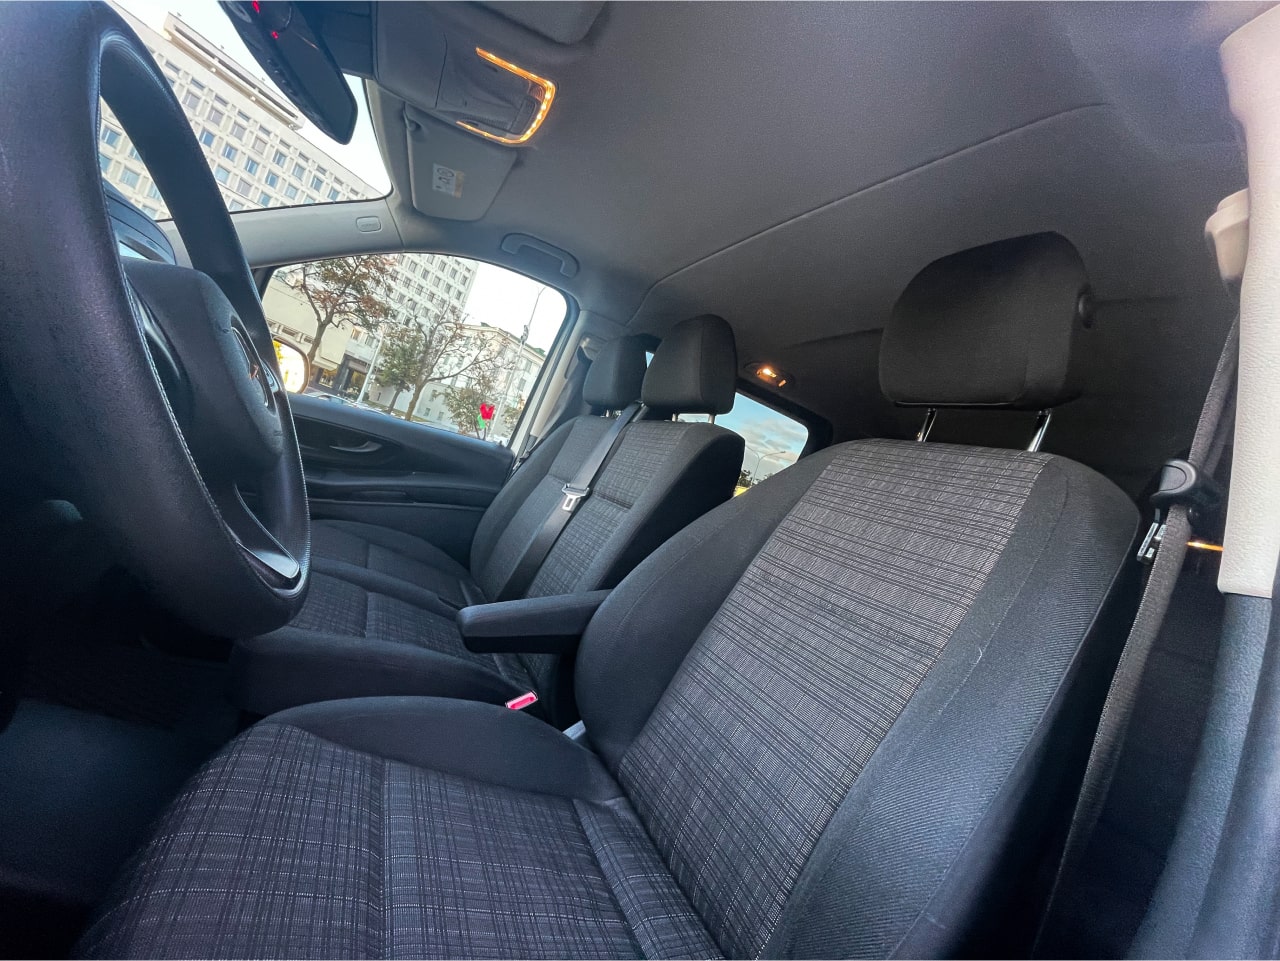 Аренда  Mercedes Benz Vito 116 CDI AT Extra Long Select 8+1  7 класса 2018-2020 года в городе Минск от 85 $/сутки,  двигатель: ДТ , объем 2.1 литров, КАСКО (Мультидрайв), без водителя, вид 8 - West Group